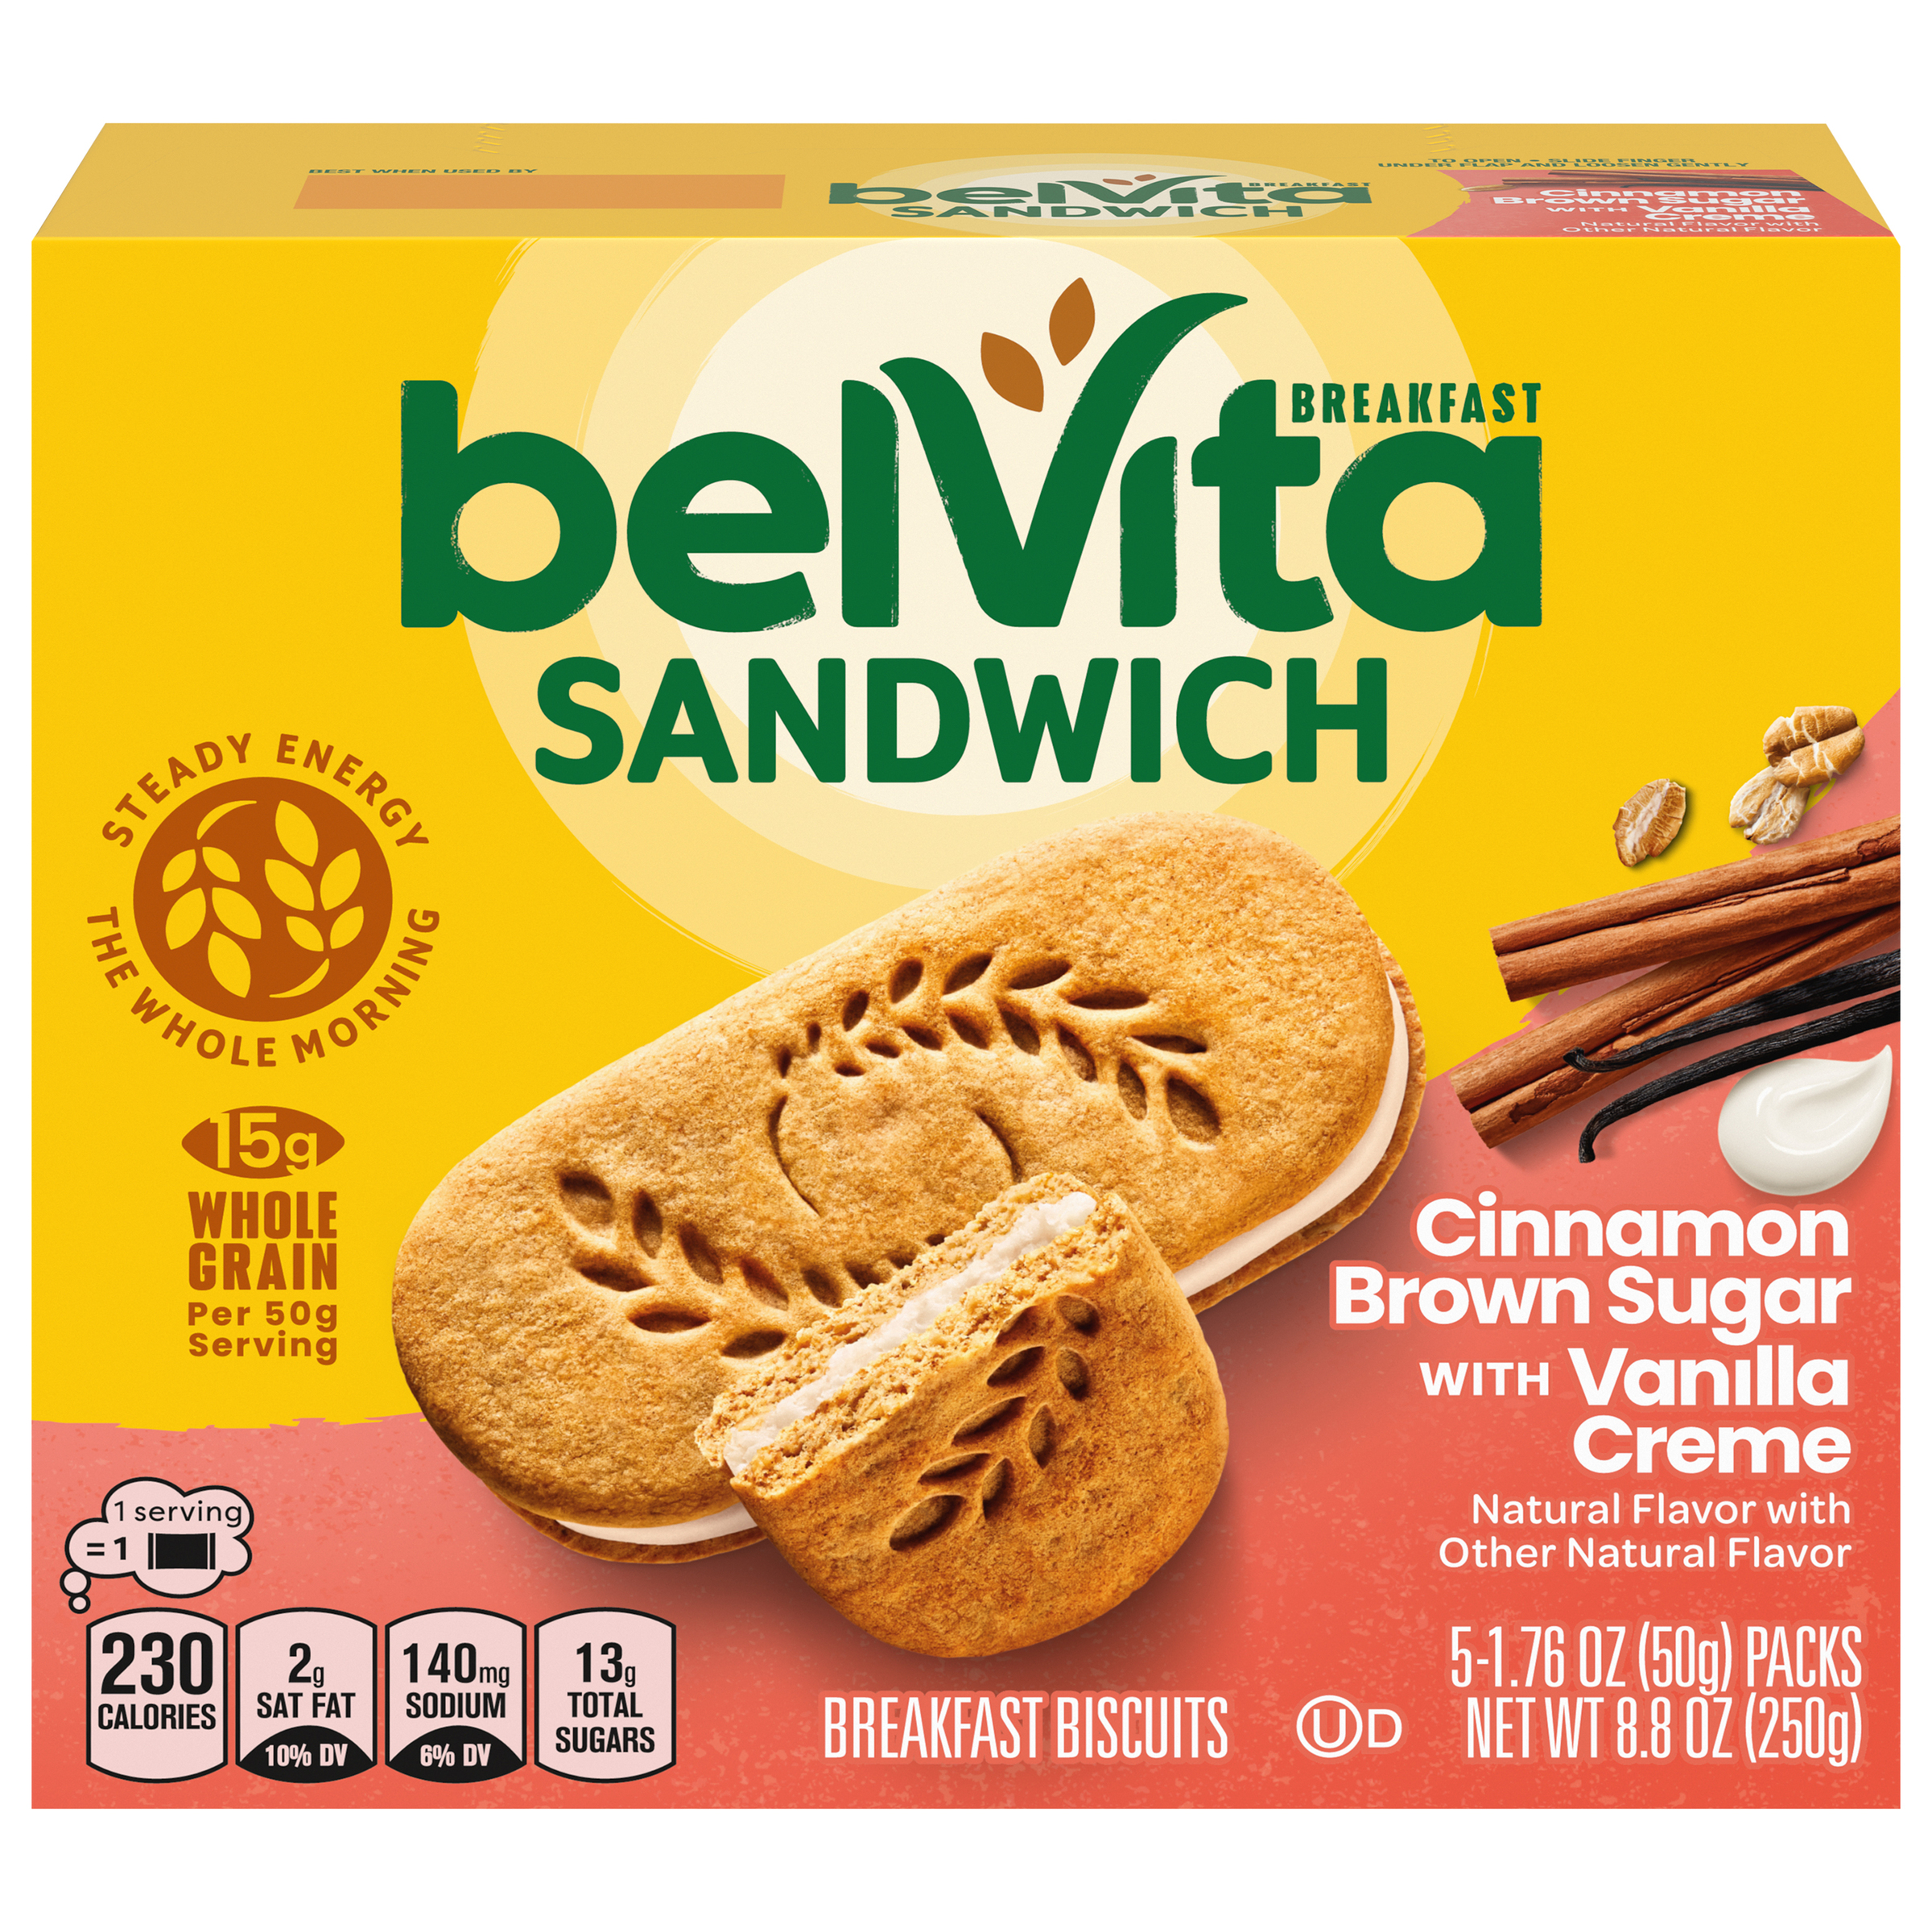 belVita Breakfast Sandwich Cinnamon Brown Sugar with Vanilla Creme